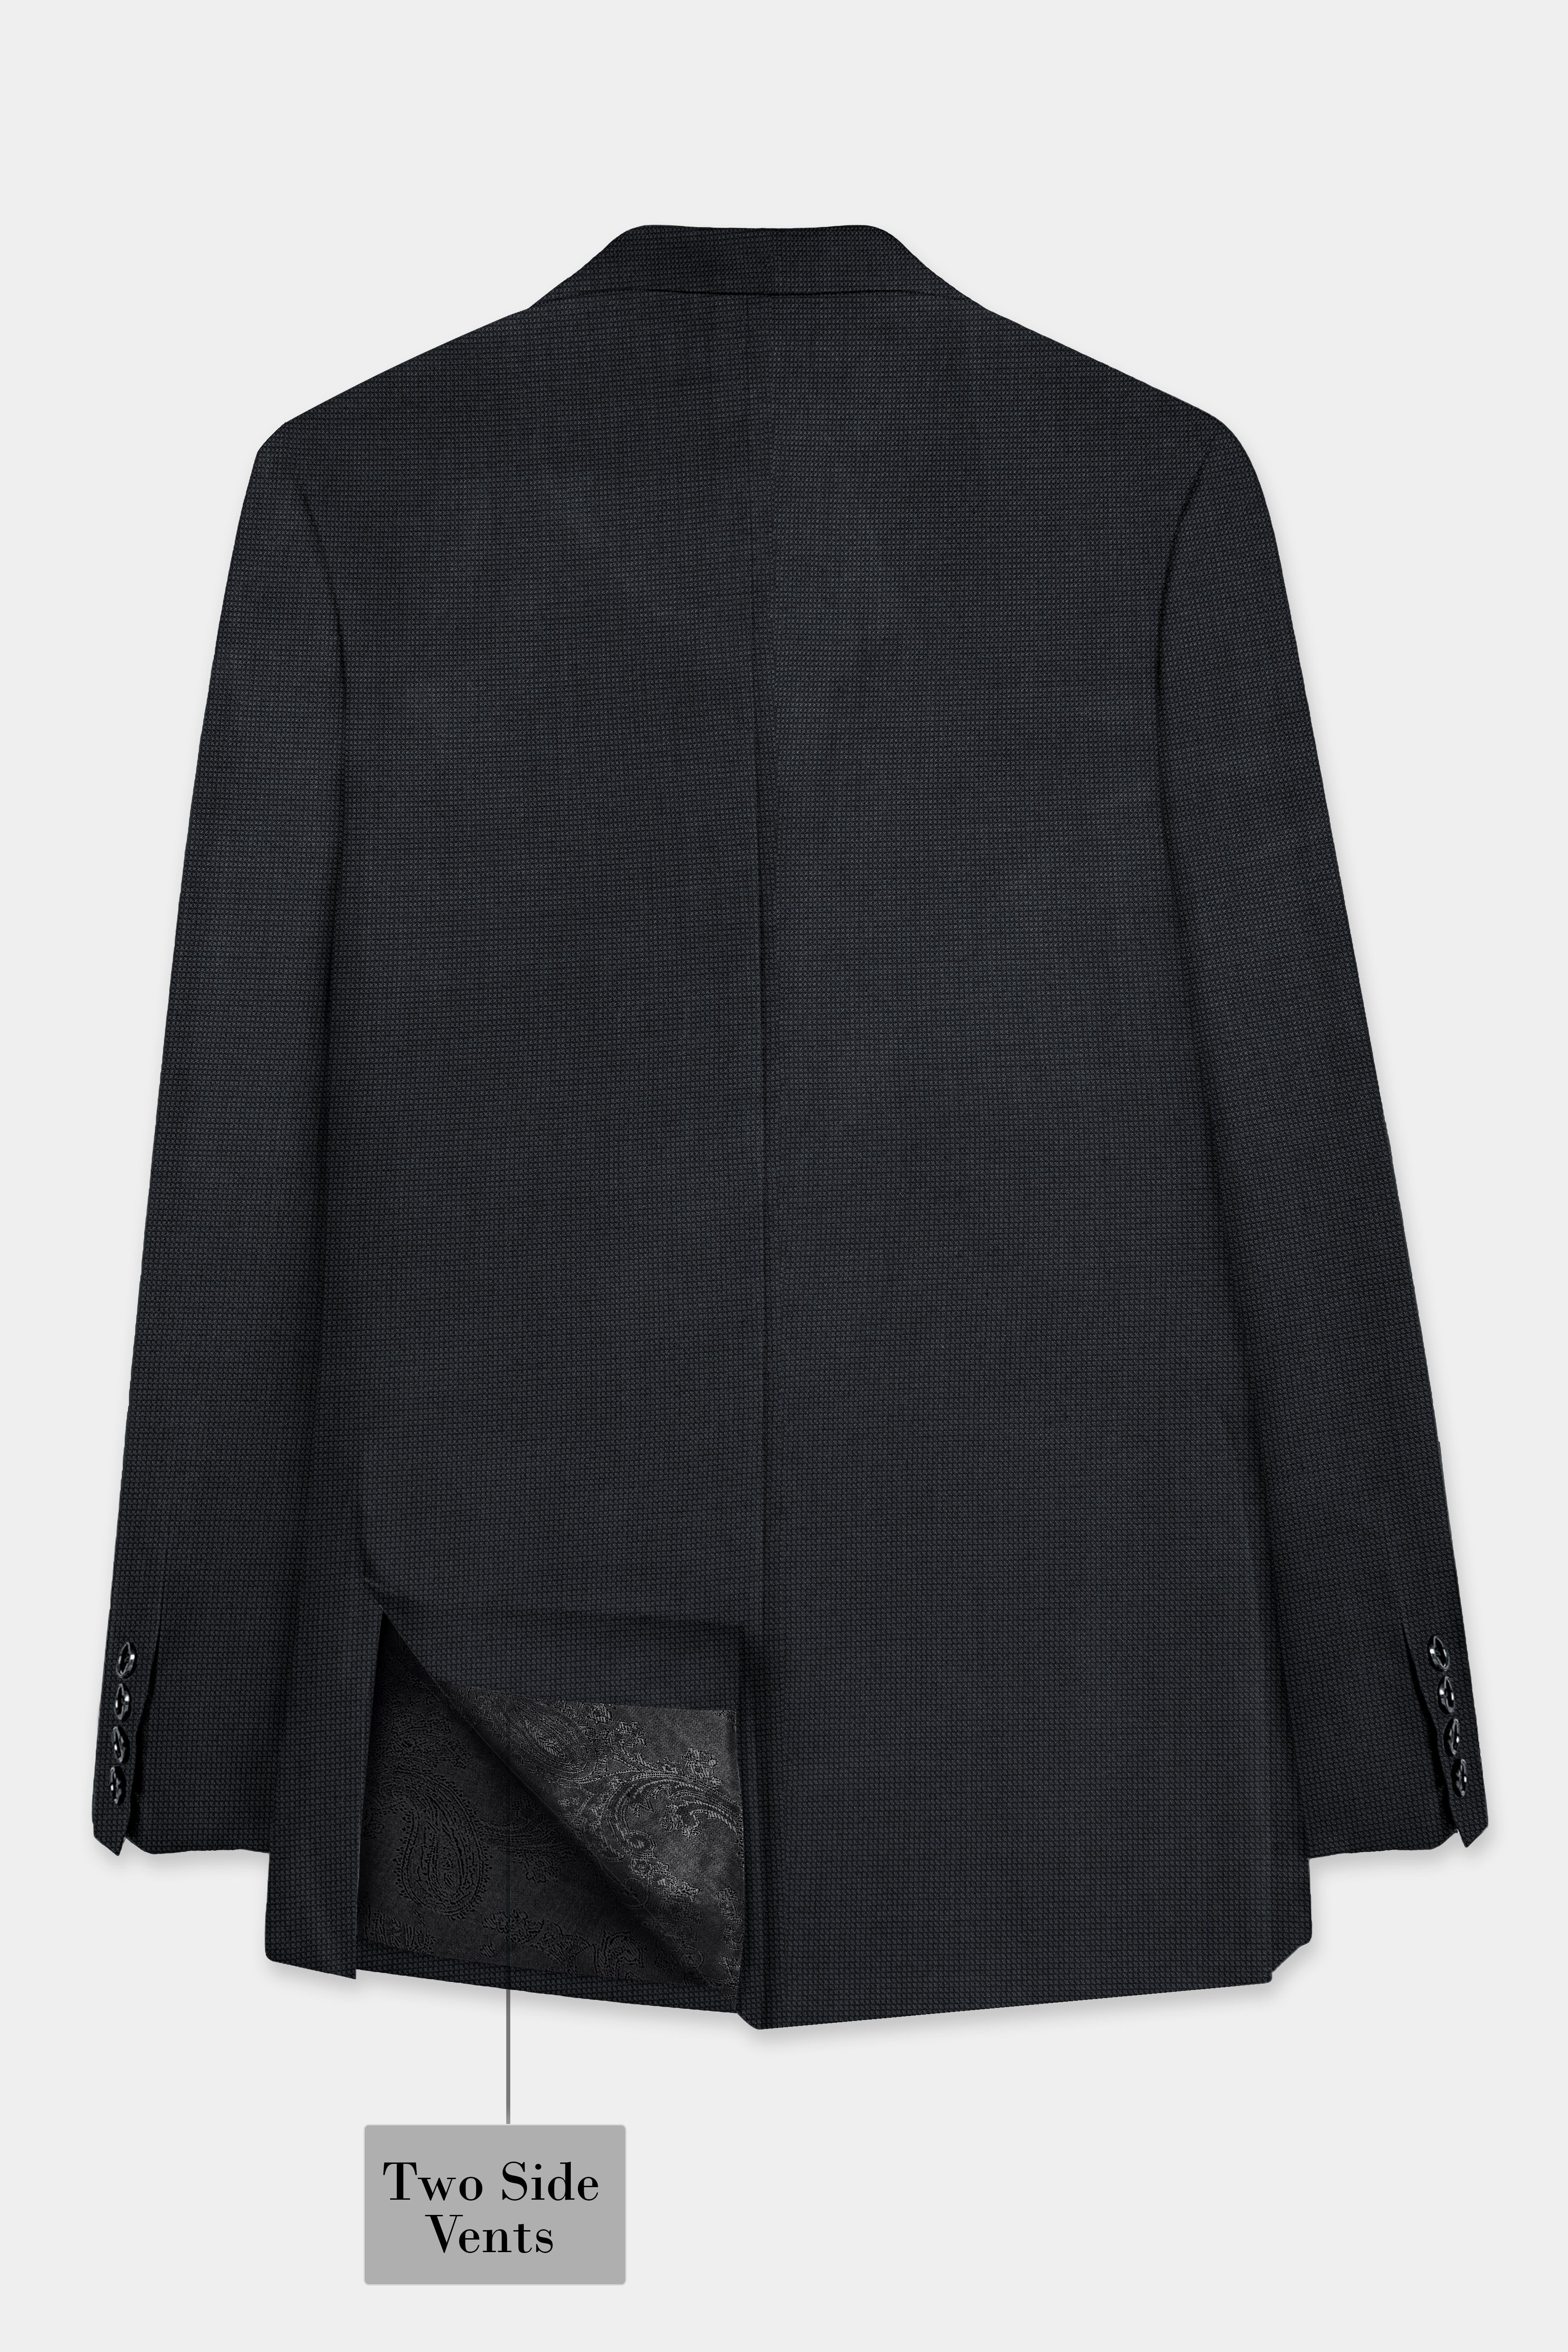 Jade Black Textured Wool Blend Blazer